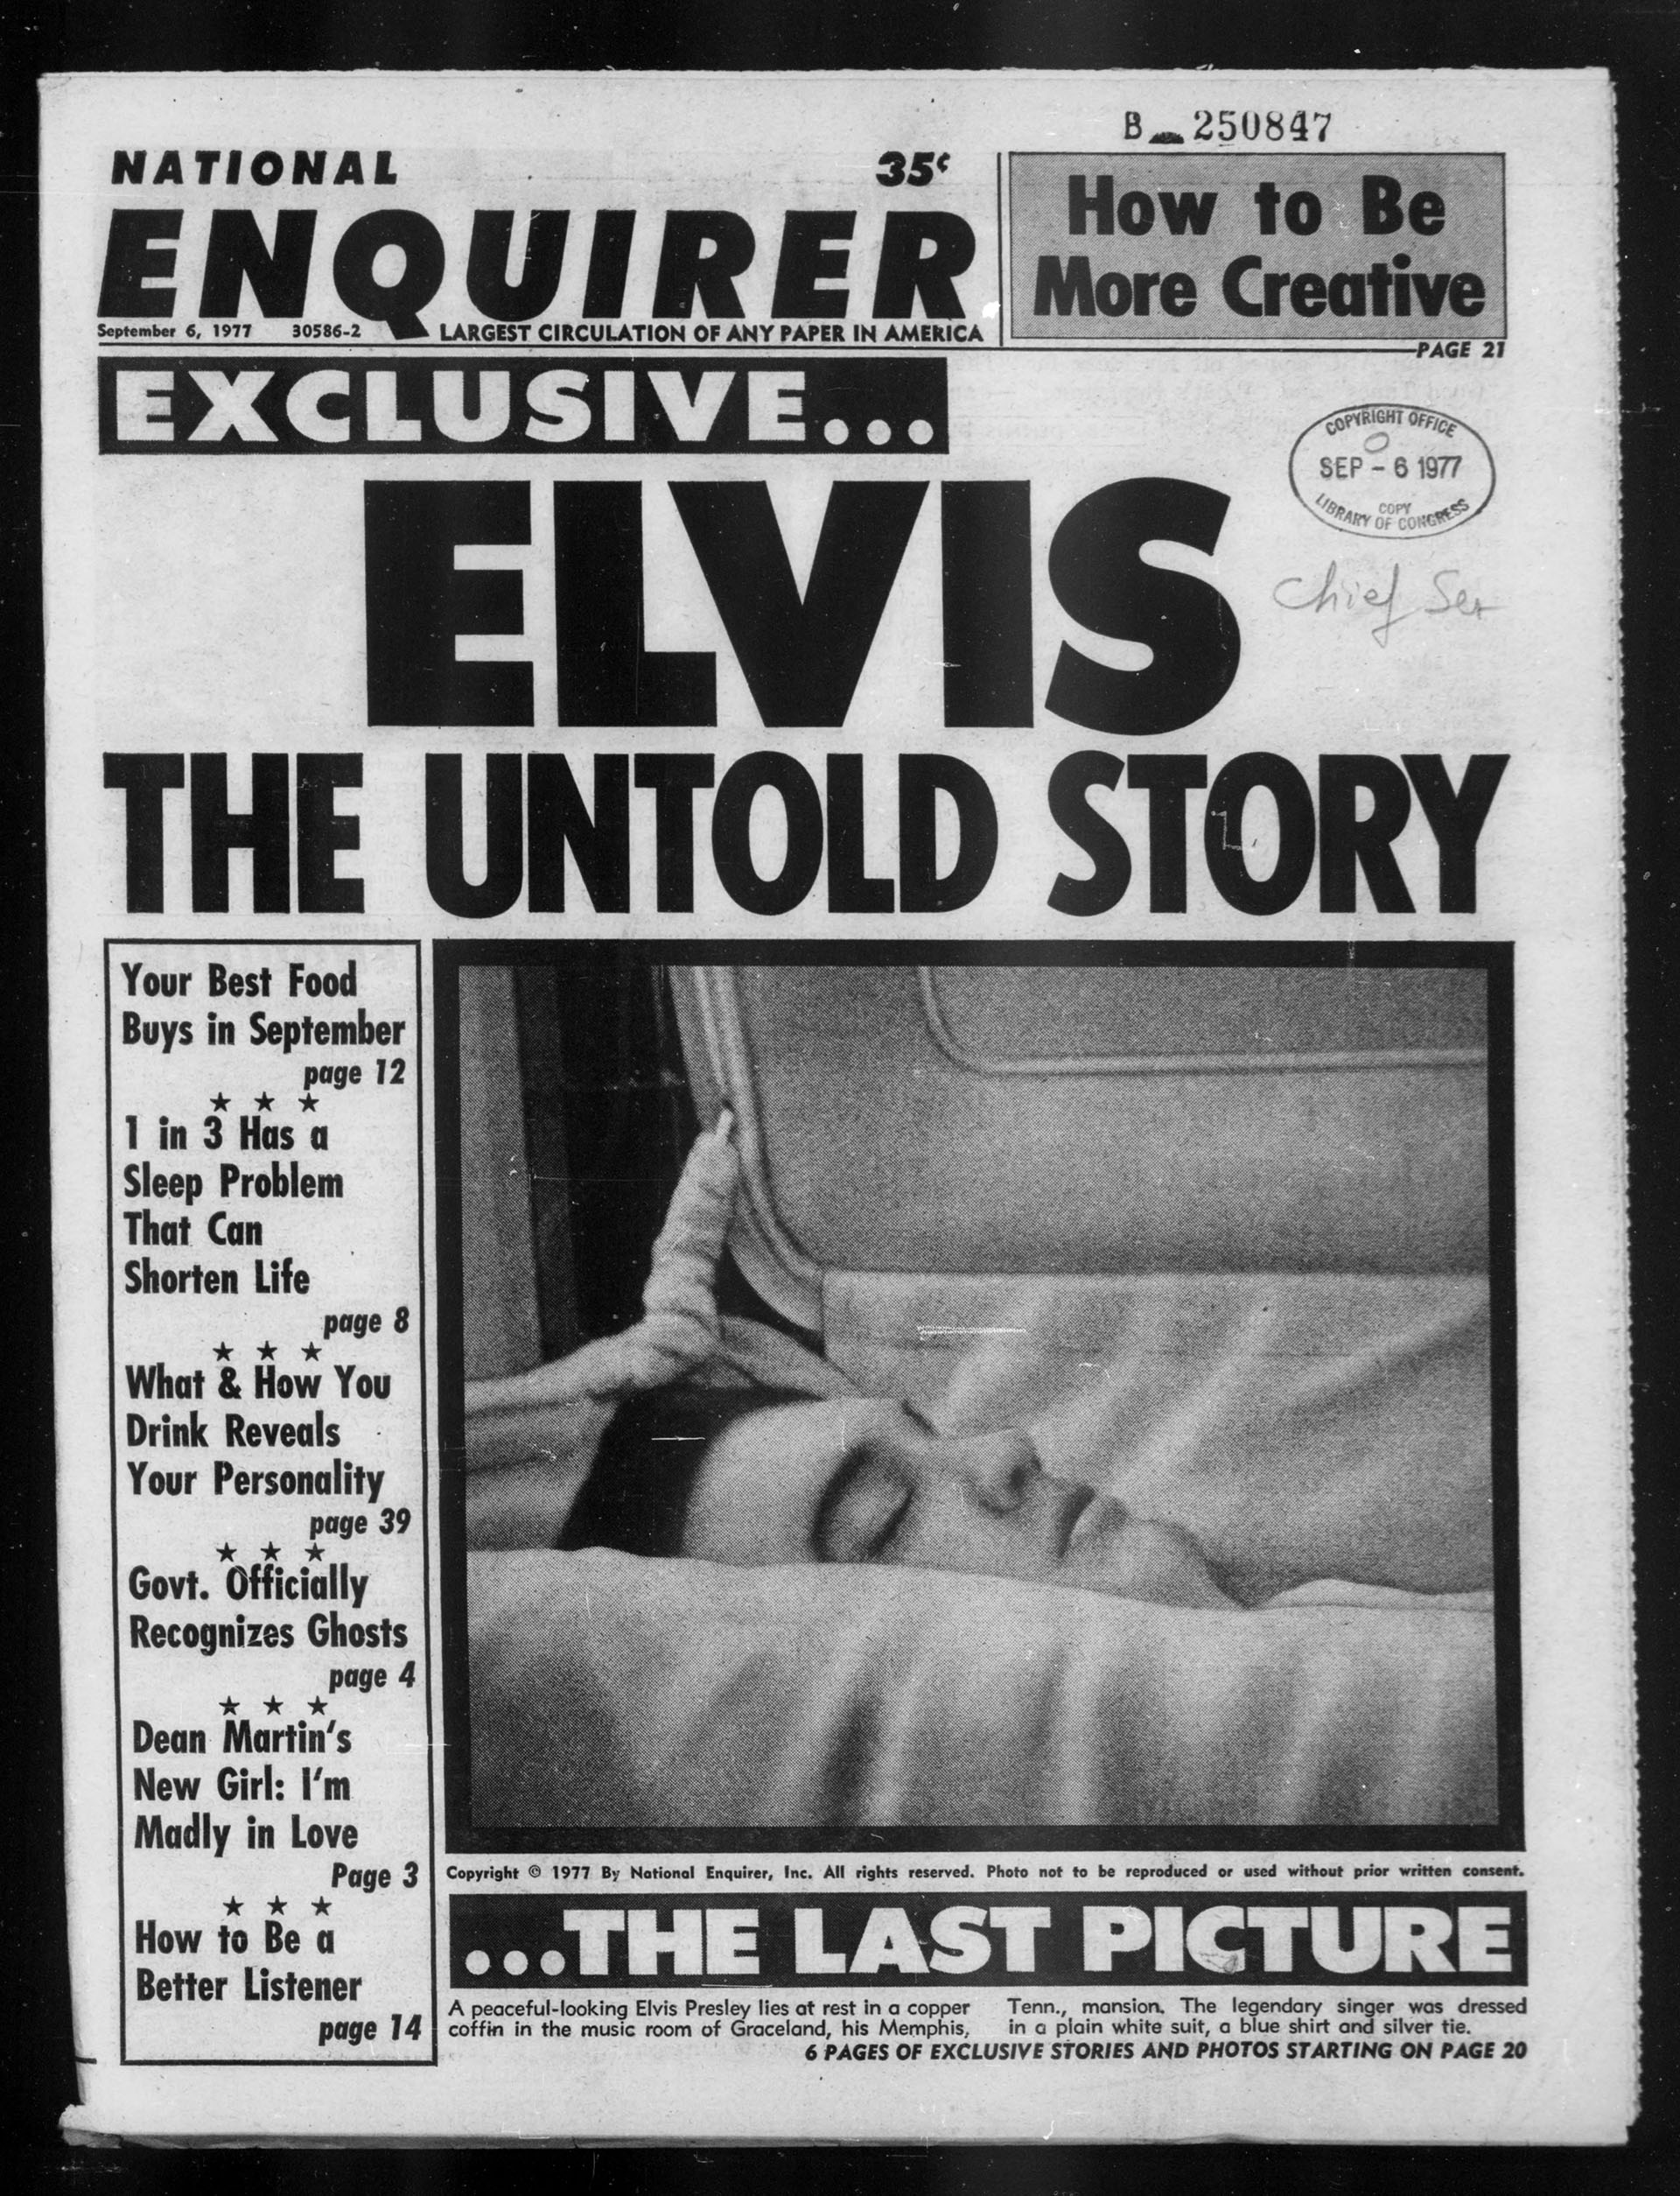 La tapa del National Inquirer del 6/9/77. Ese fue el número más vendido de la historia del tabloide sensacionalista. más de 6 millones de ejemplares. Le pagaron 18.000 dólares a un primo de Elvis para que sacara la foto